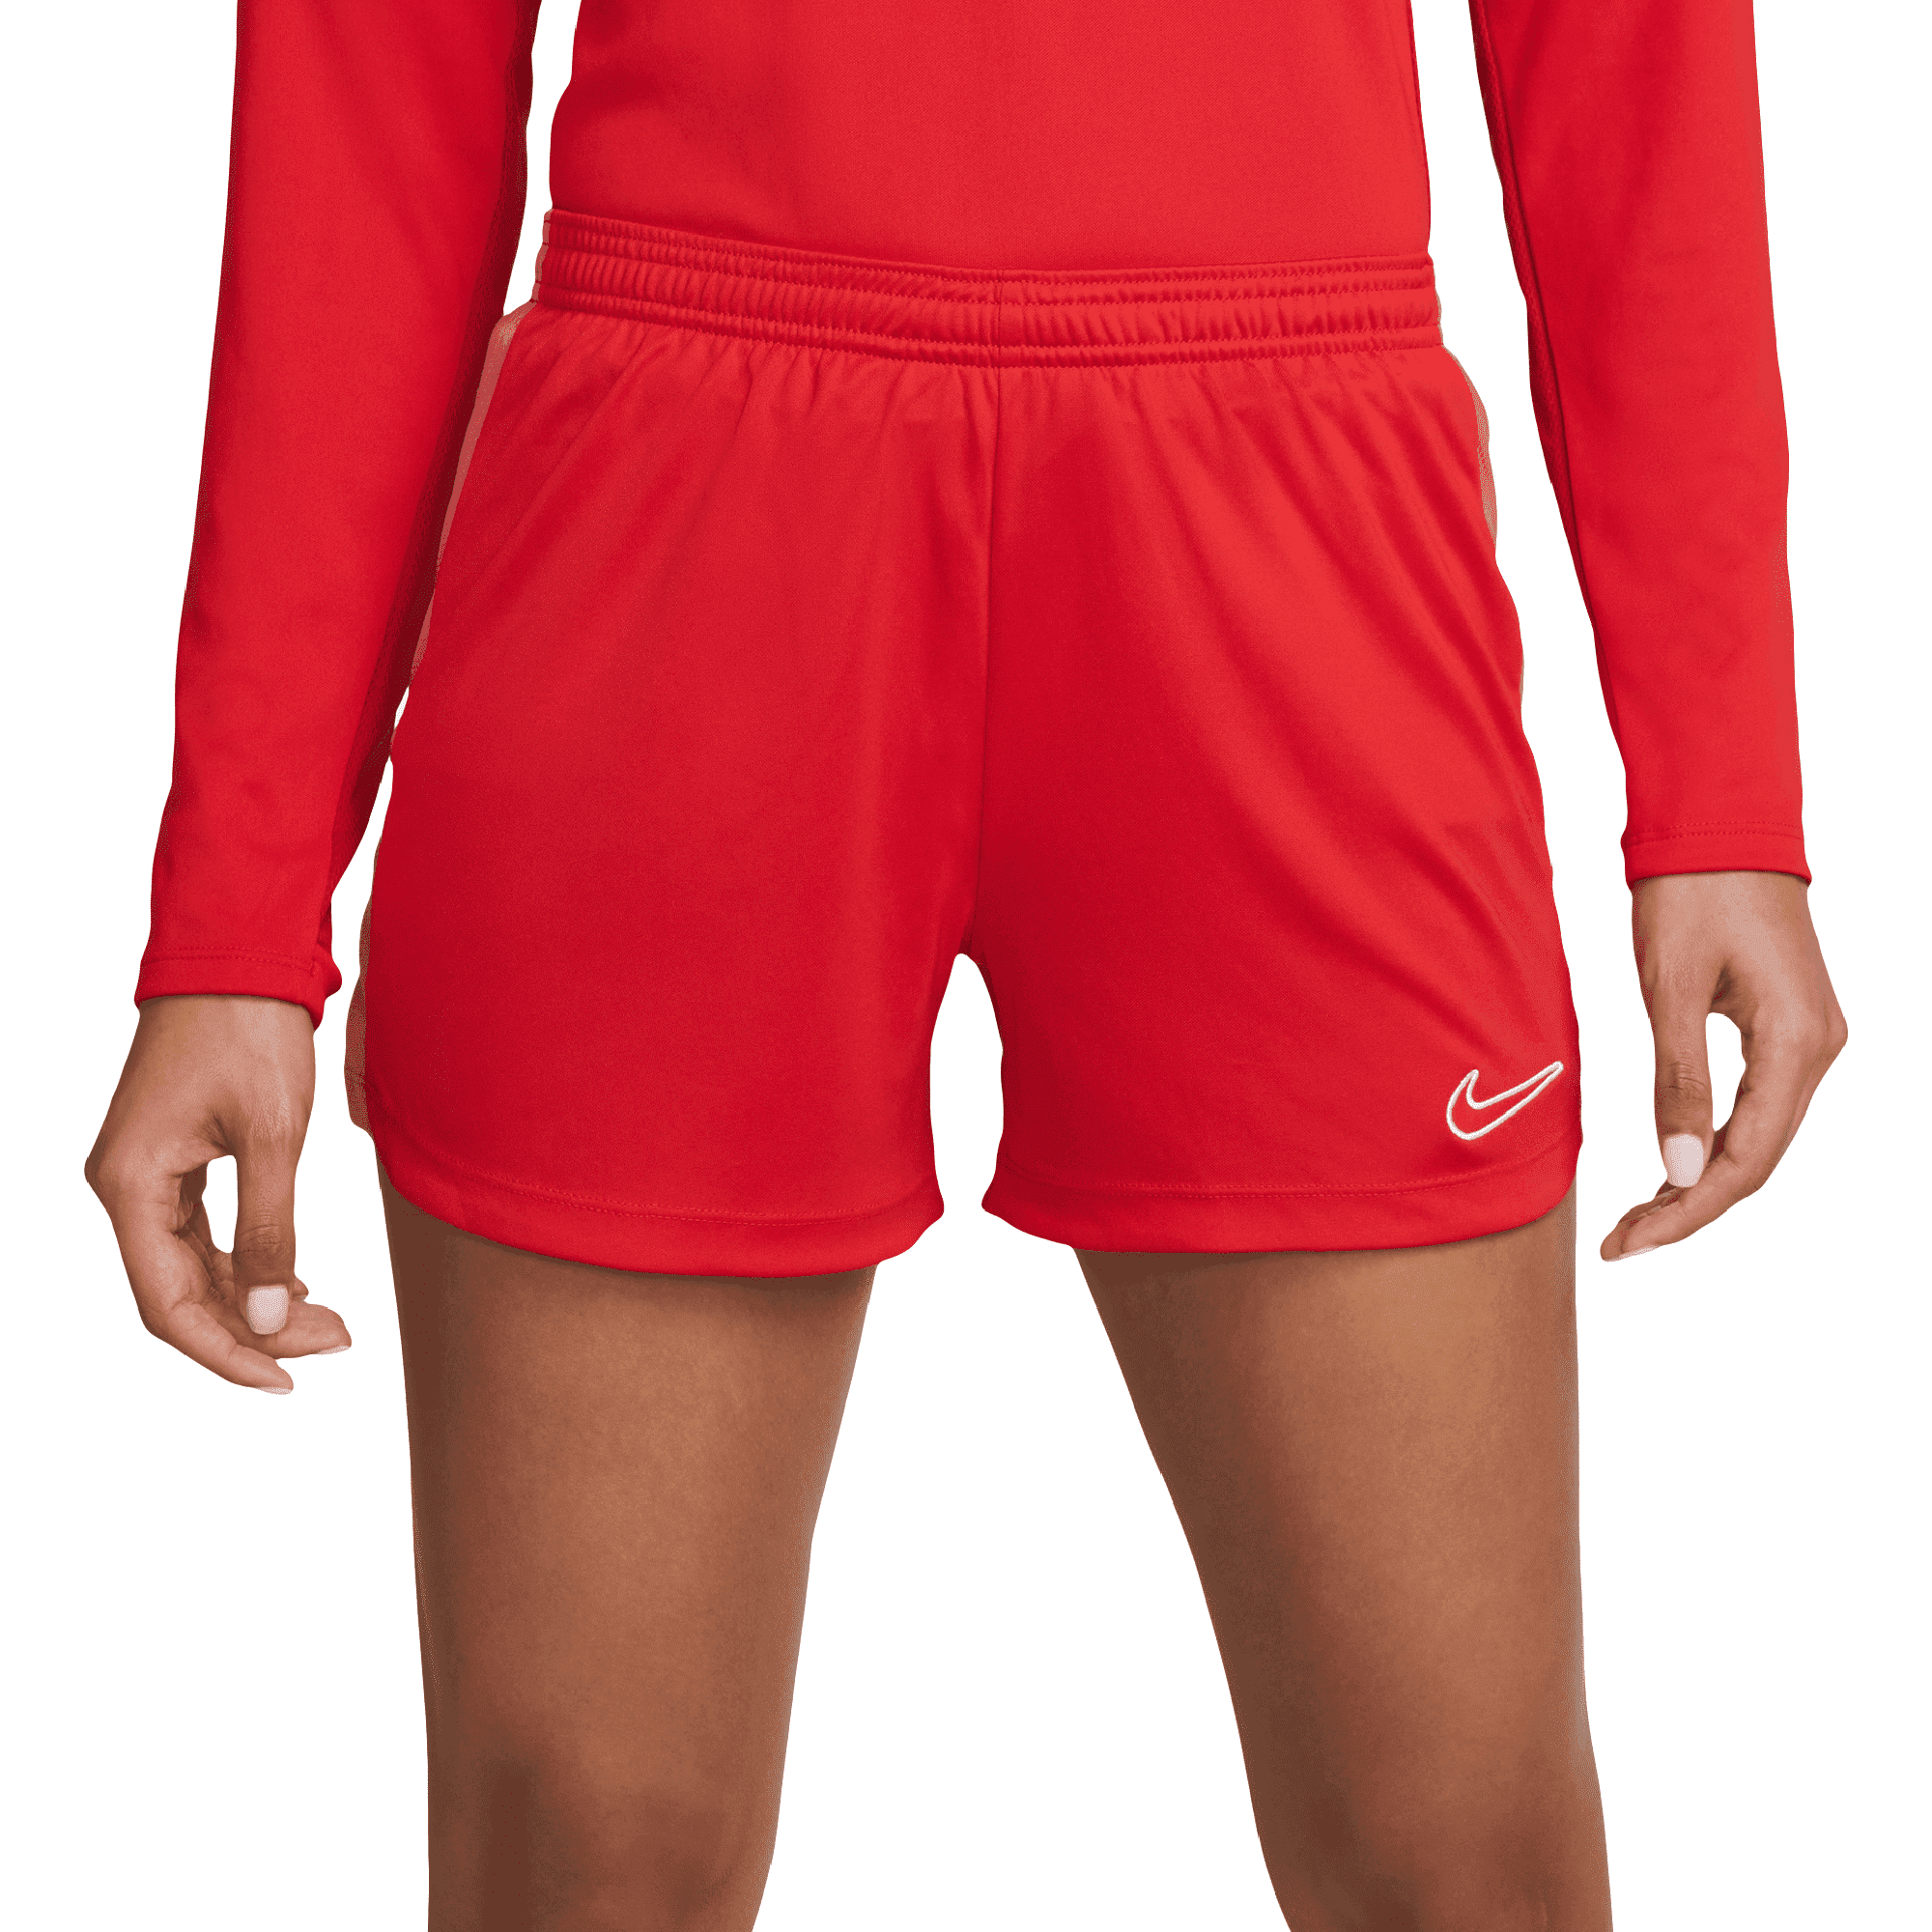 Short Nike Entrenamiento Pro 365 Mujer | Martí tienda en linea - Martí -  Tienda de Deportes México